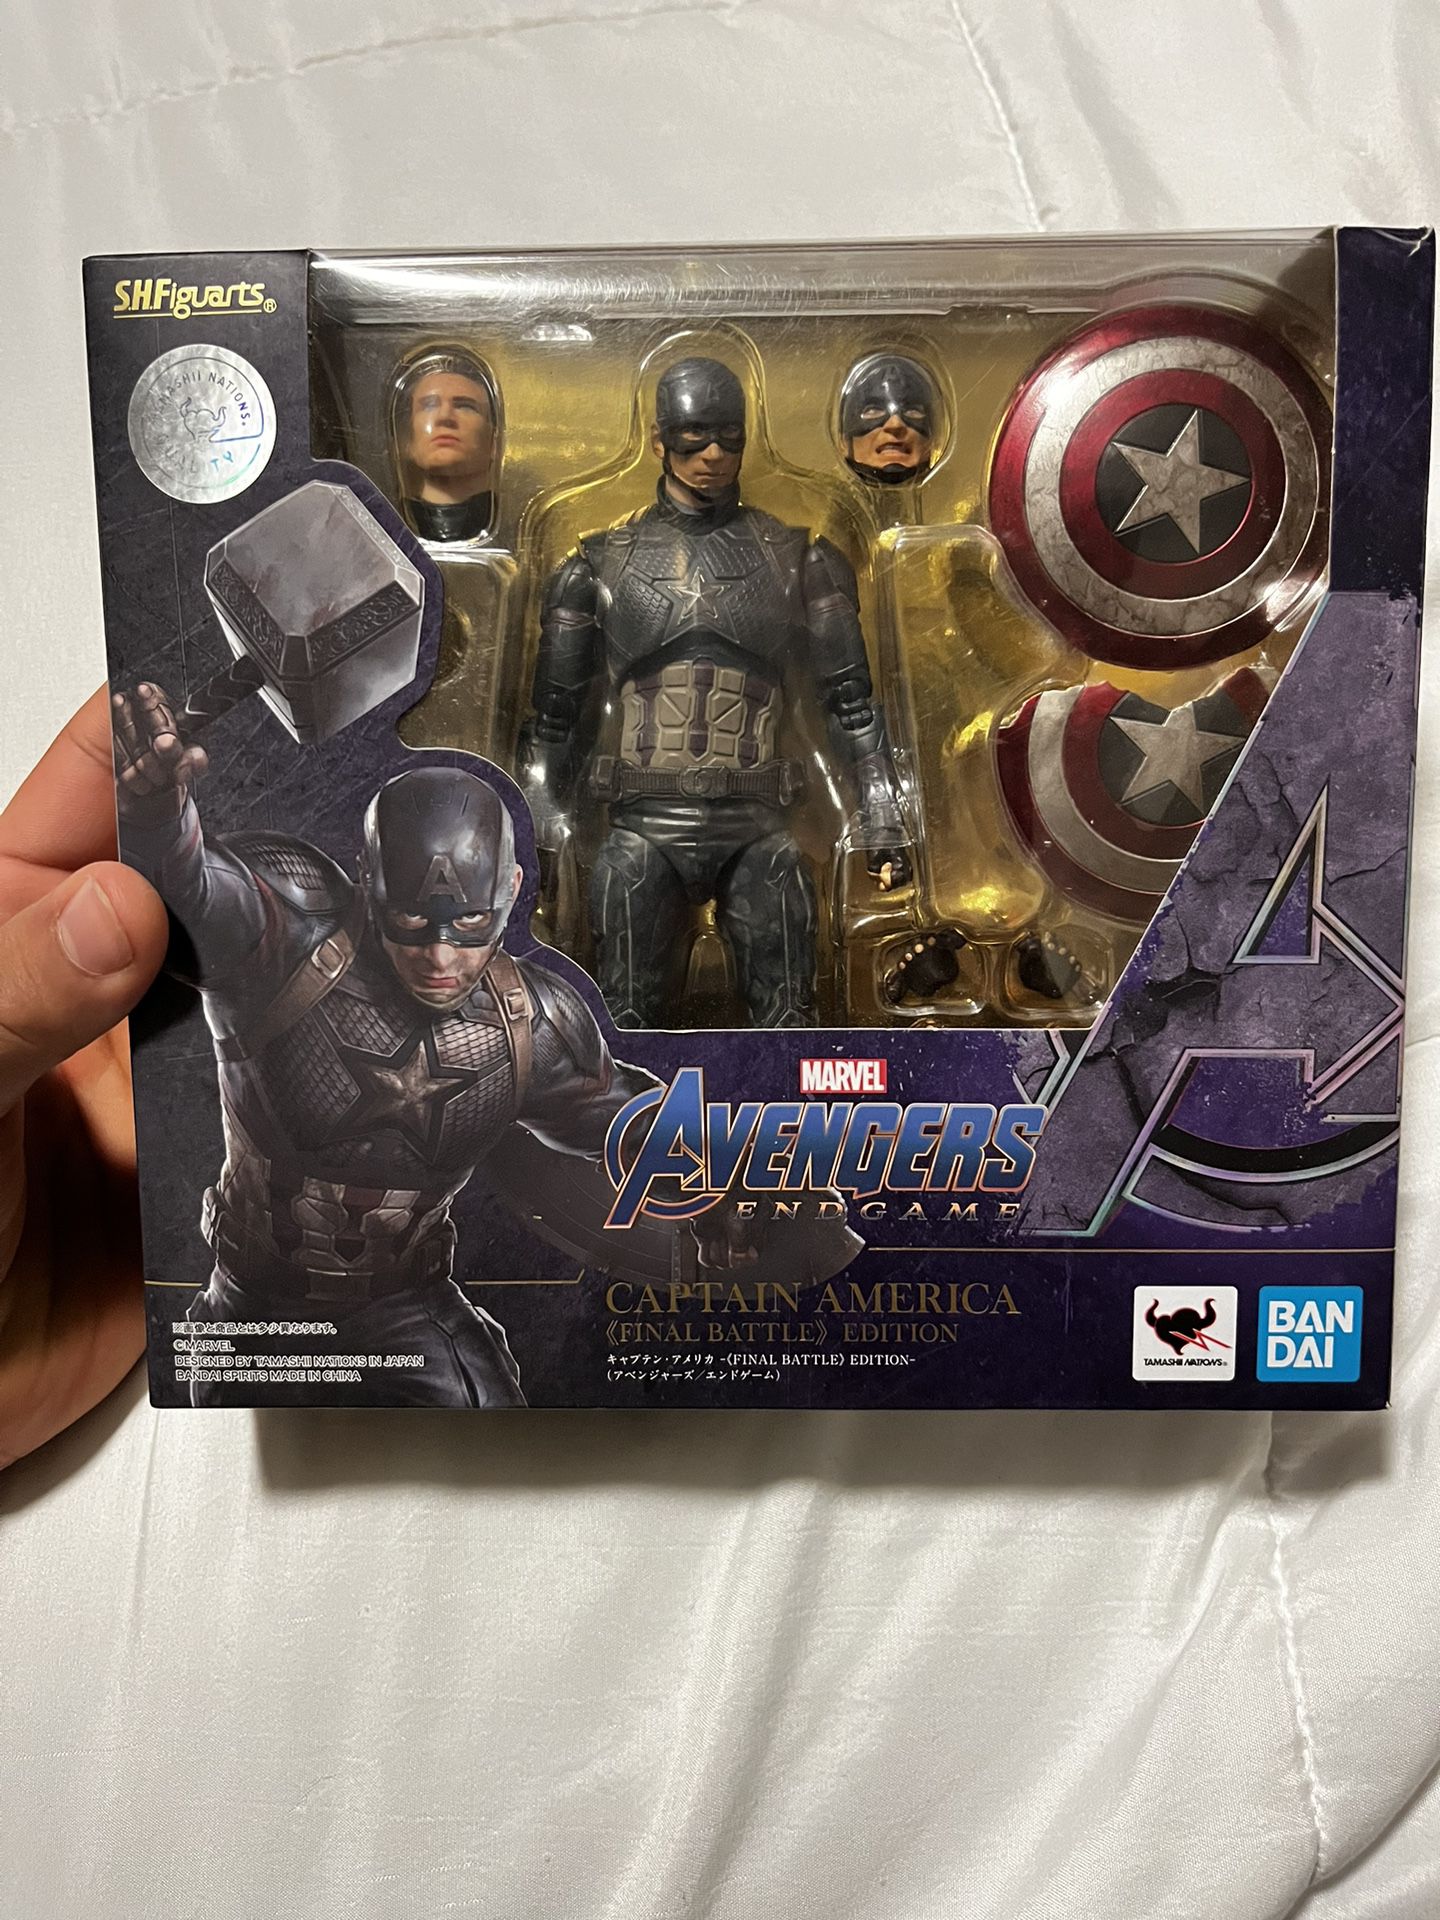 S.H. Figuarts Avengers Endgame Captain America Final Battle Edition